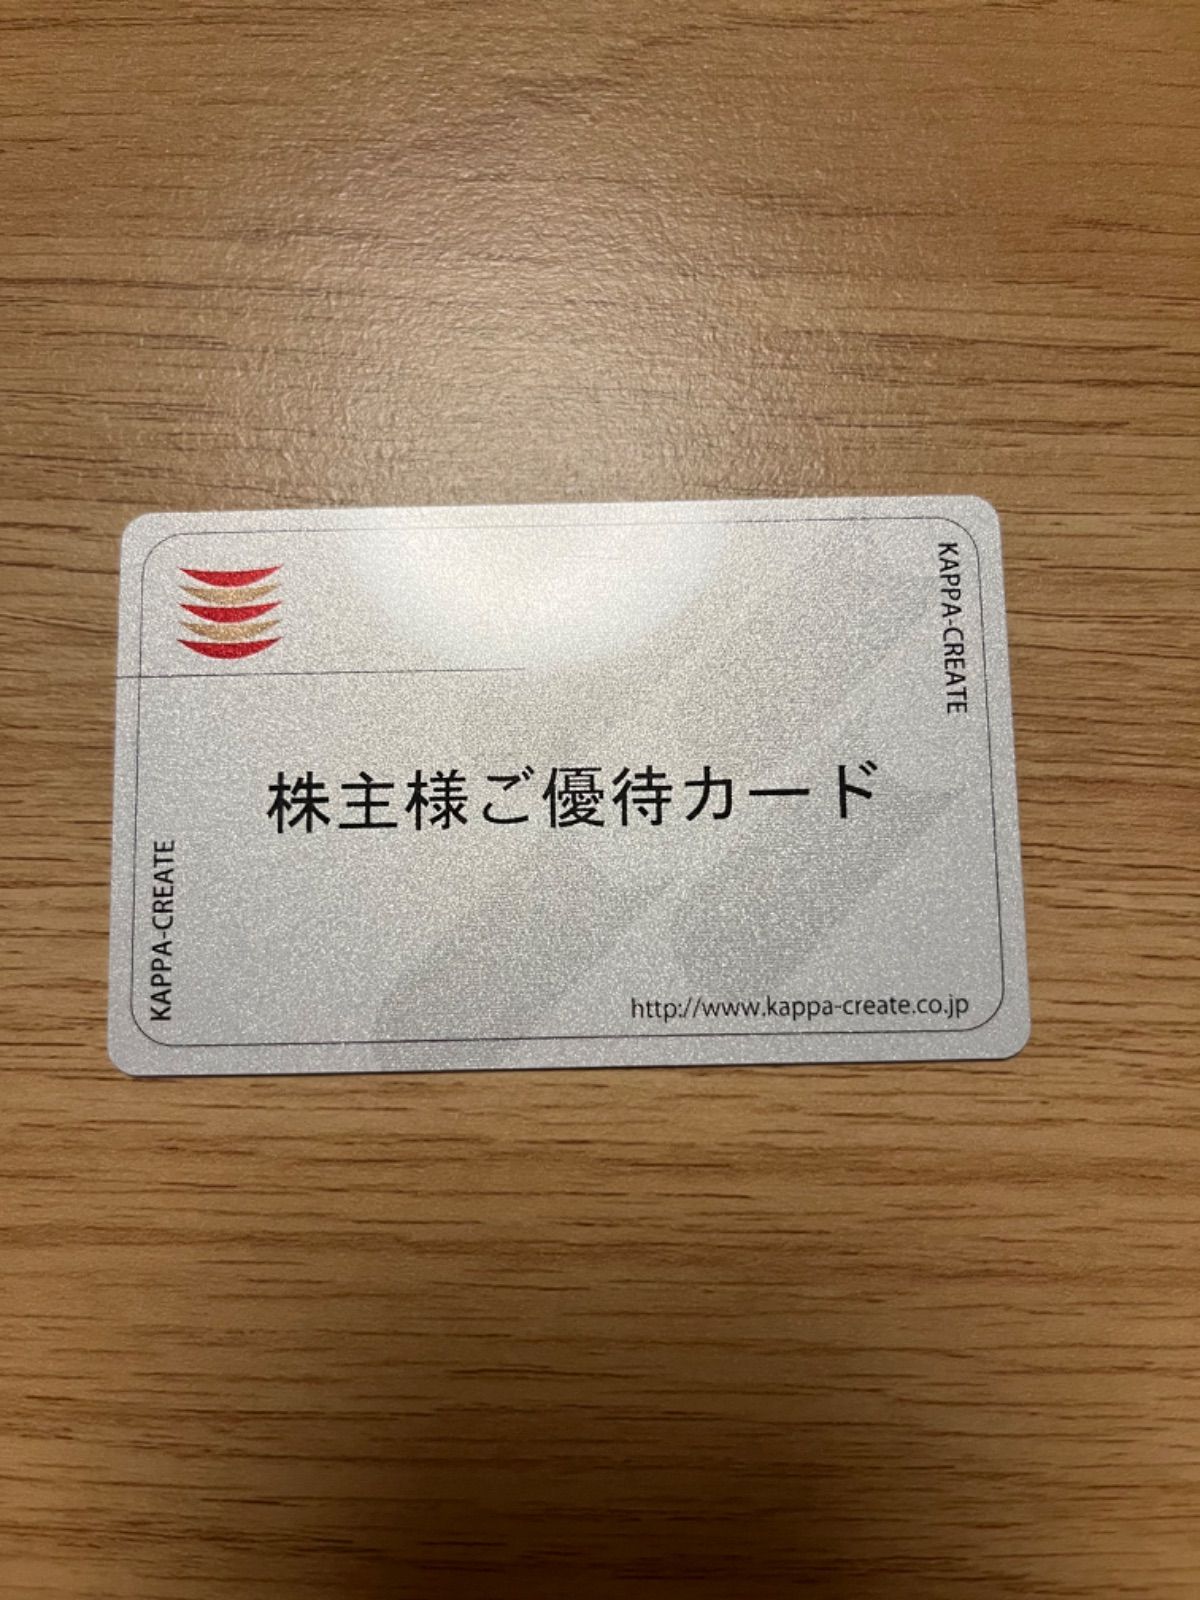 ☆最新☆カッパ・クリエイト株主優待カード 6,000円分